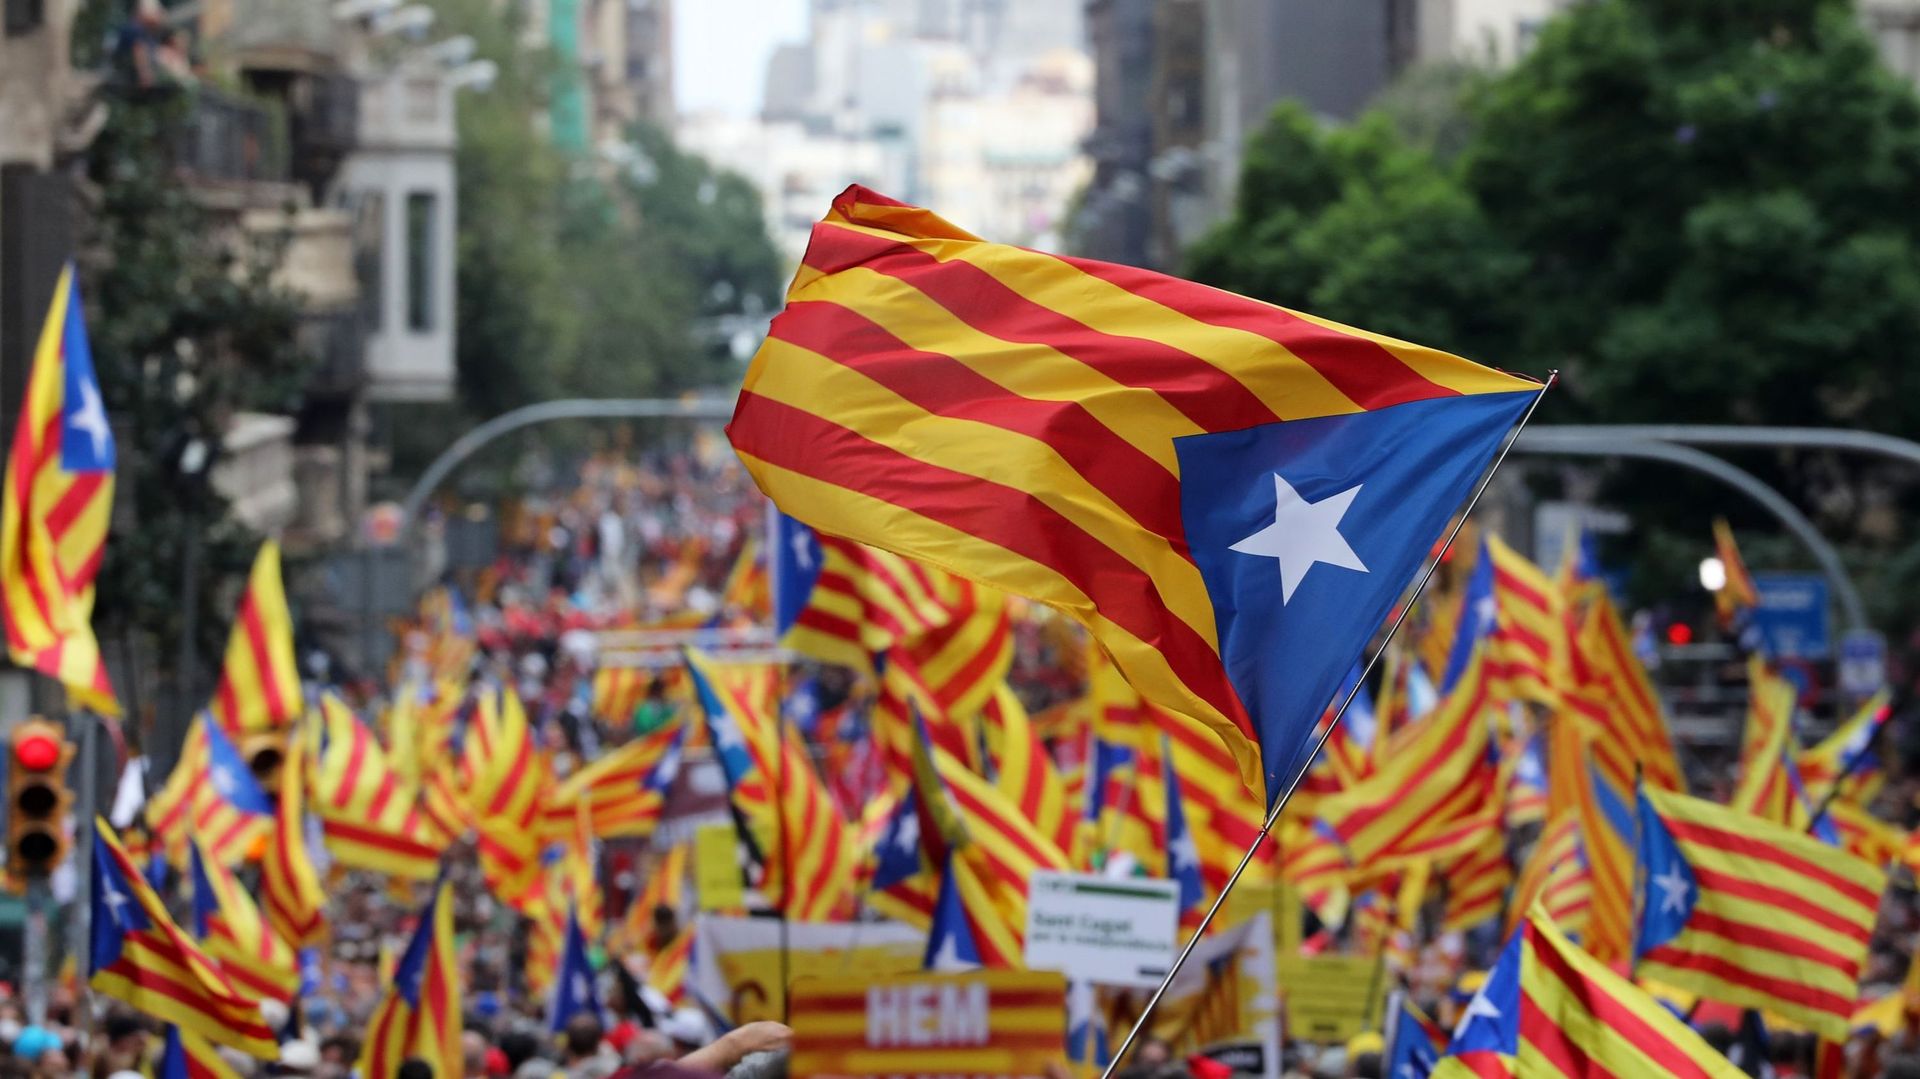 Des personnes brandissent des drapeaux catalans pro-indépendance "Estelada" lors d'une manifestation marquant la "Diada", la fête nationale de la Catalogne, à Barcelone, le 11 septembre 2021.